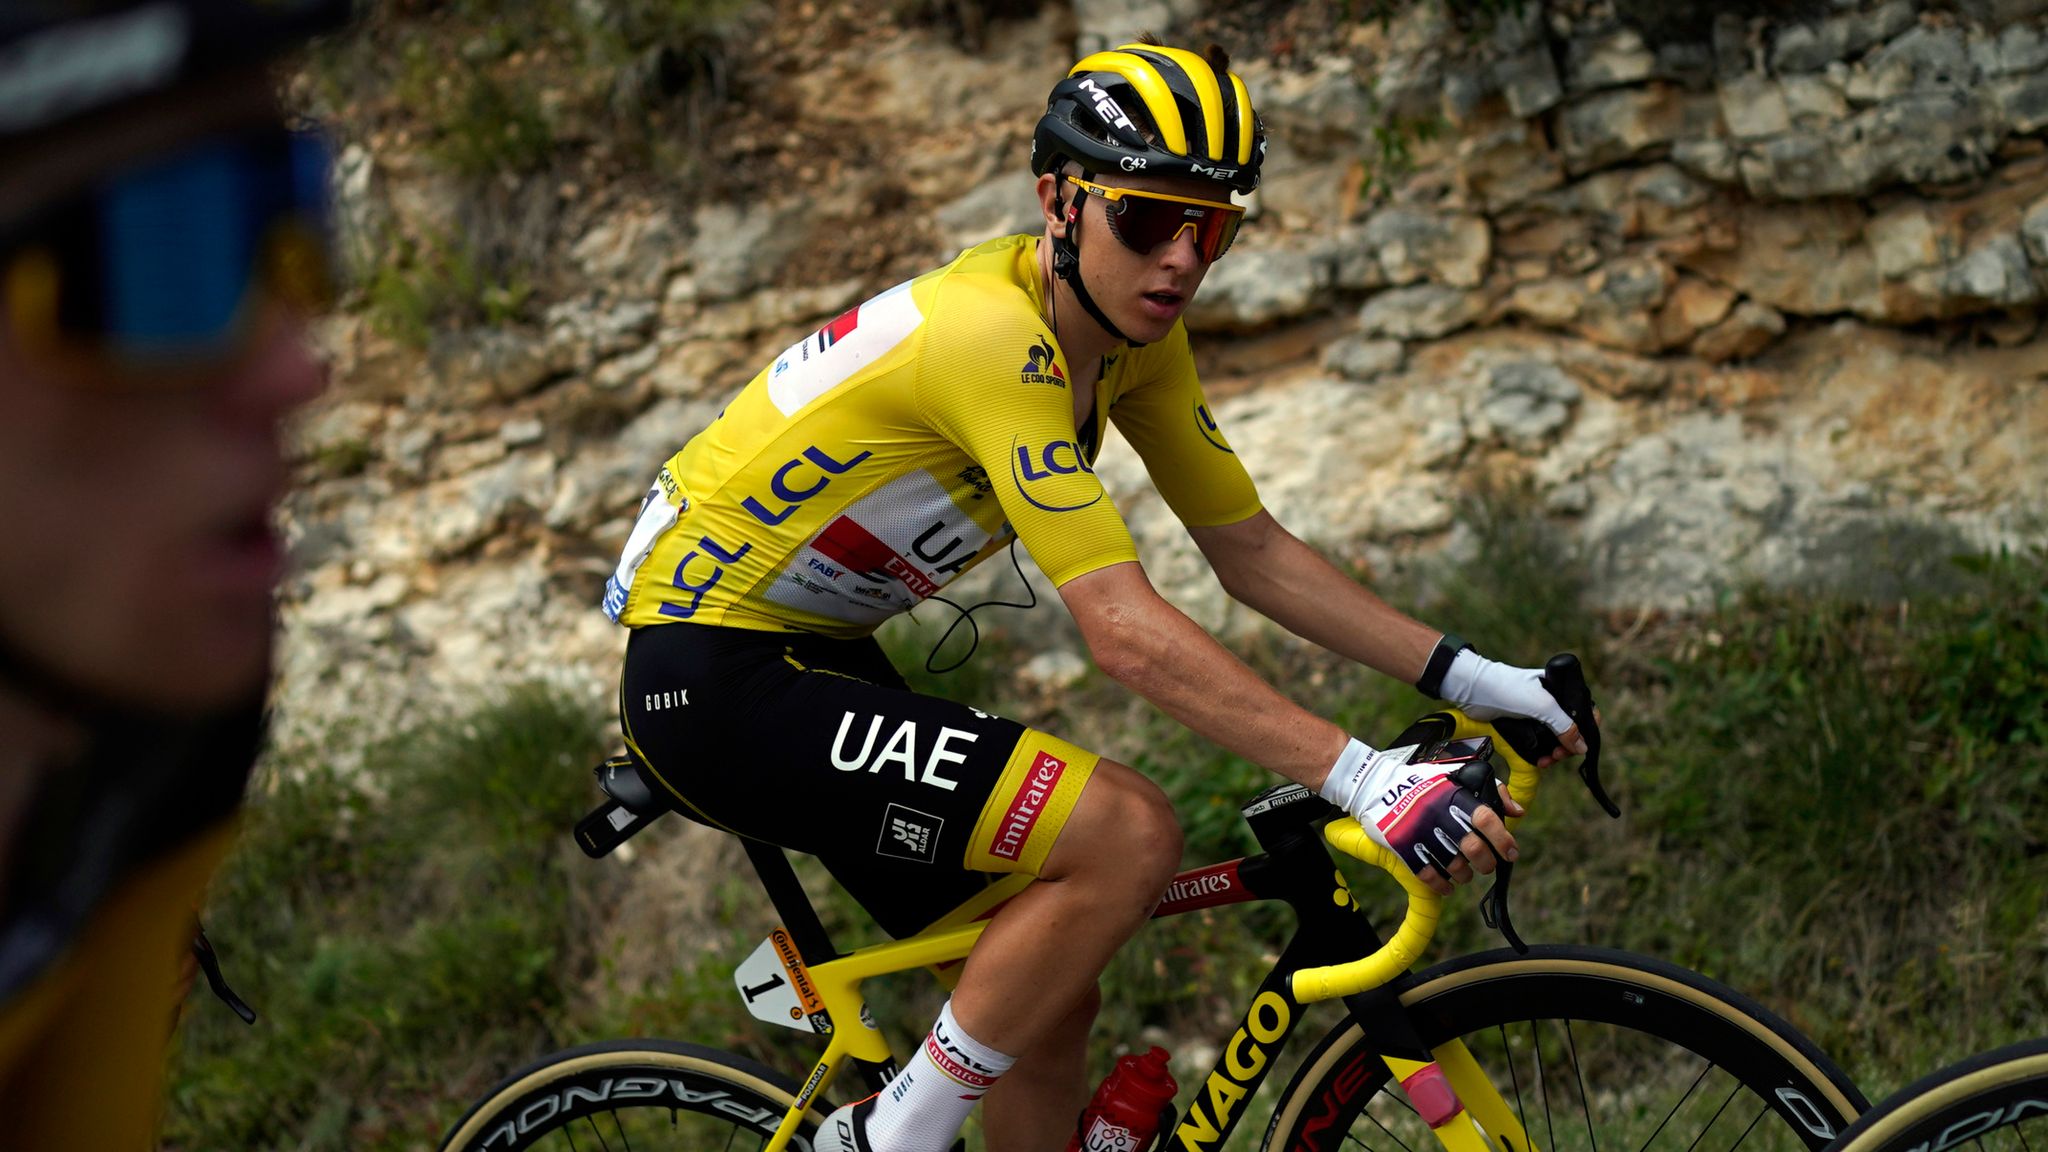 Tadej Pogacar wins stage, extends Tour de France lead